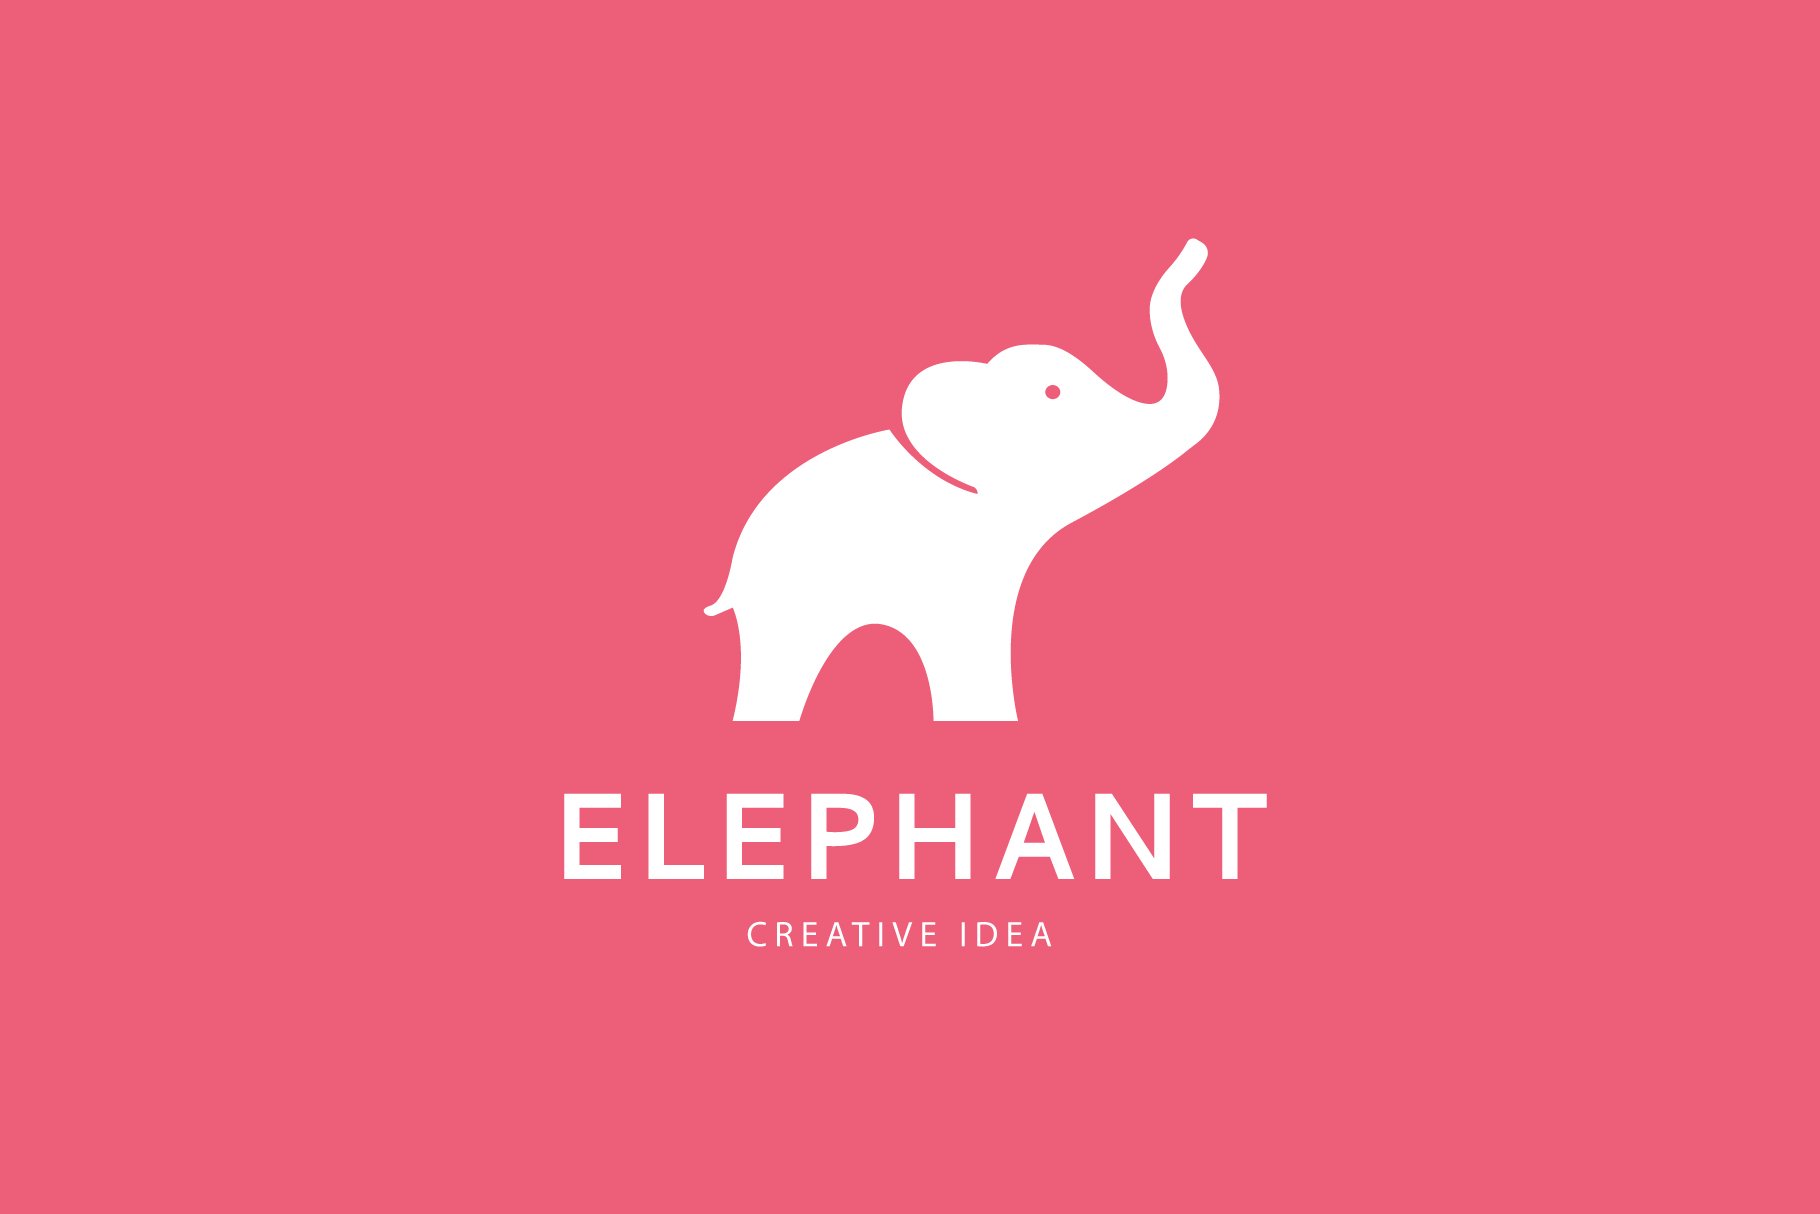 Elephant logo design preview image.